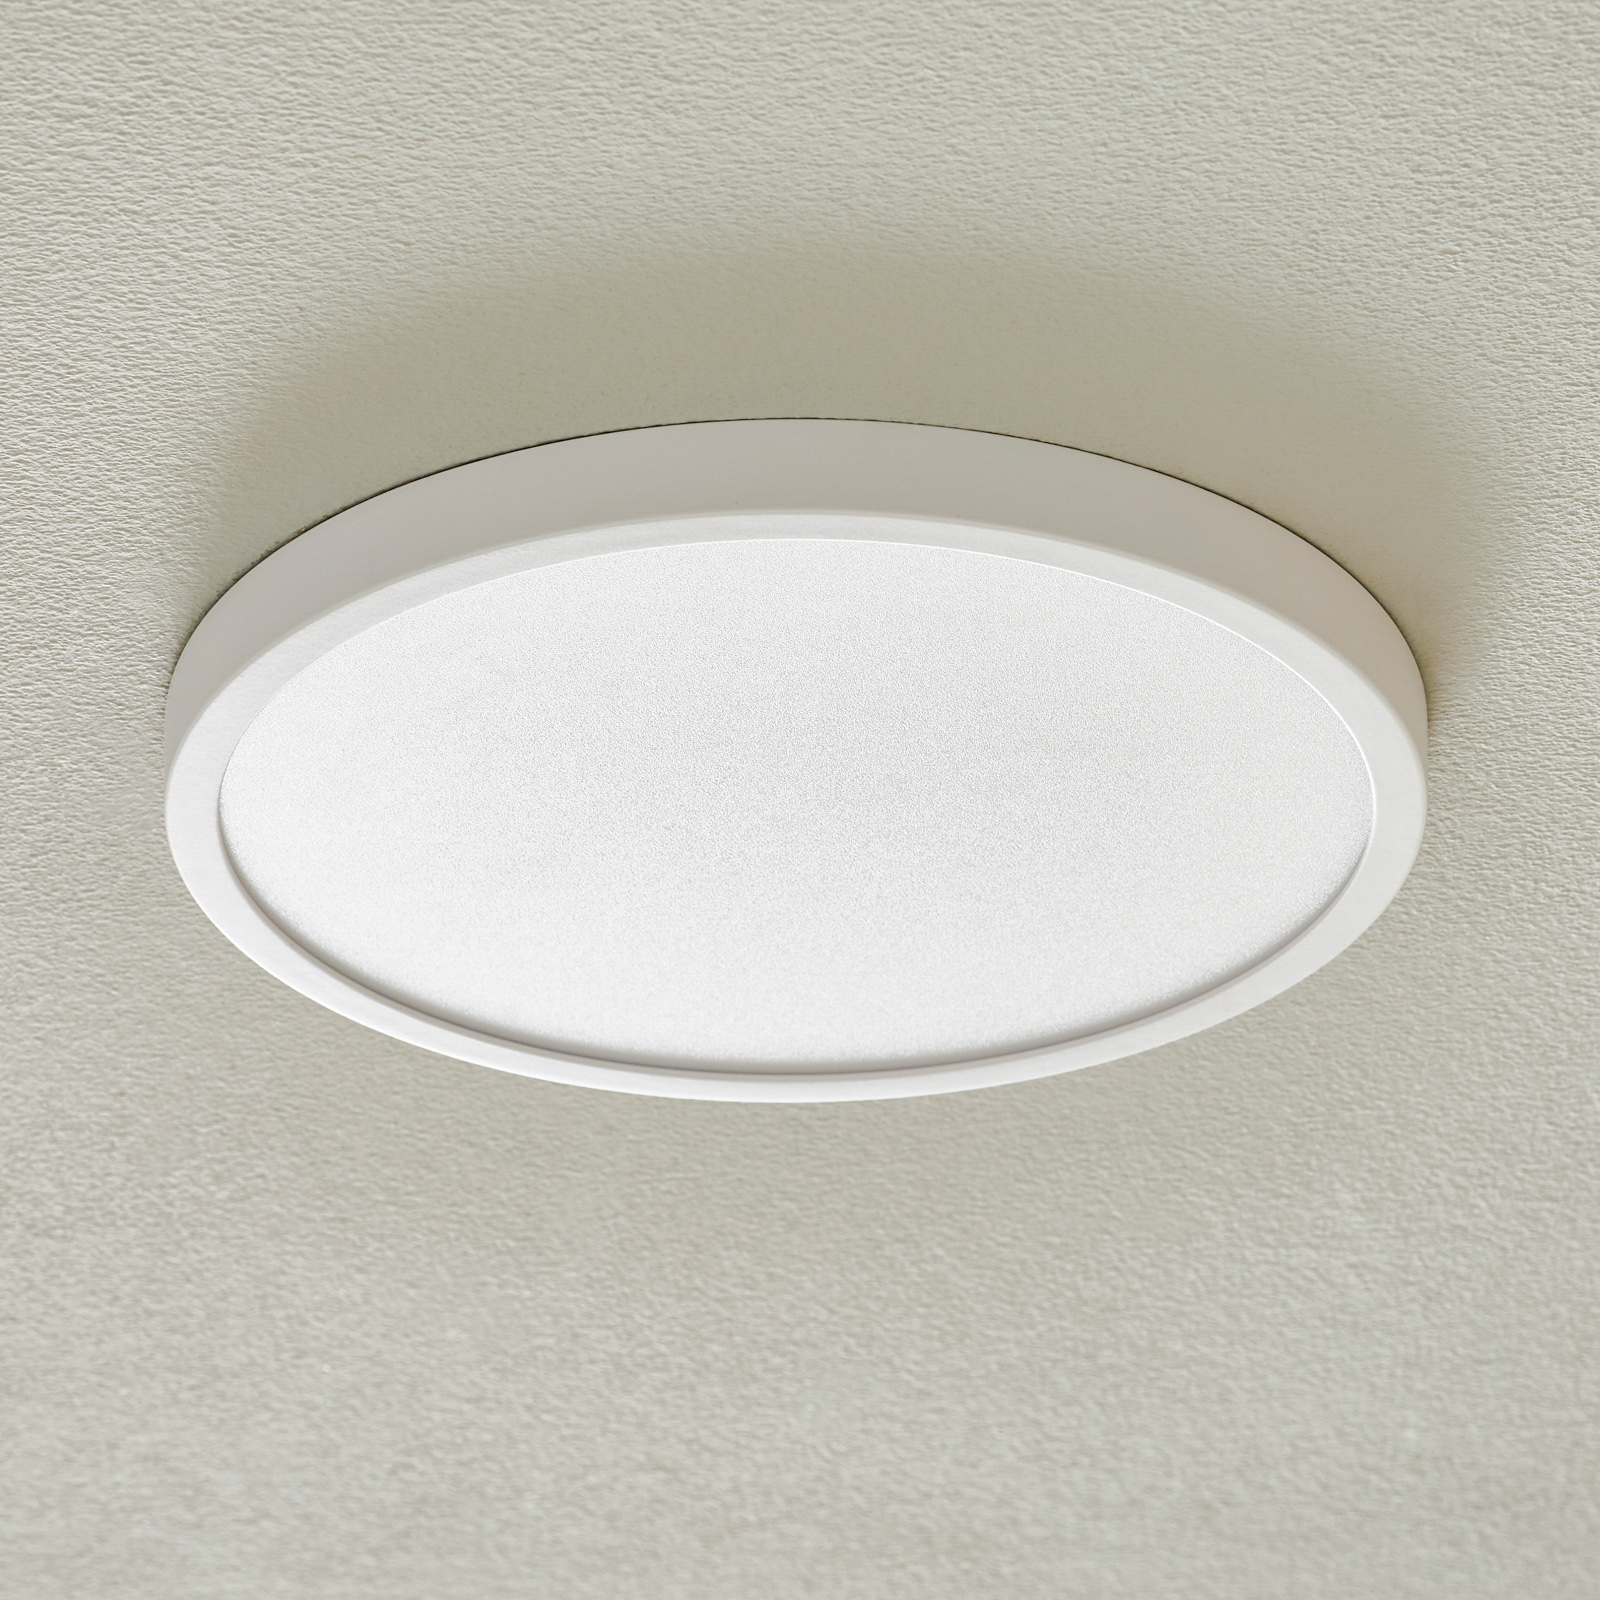 LED-kattovalaisin Vika, pyöreä, valkoinen, Ø 30cm